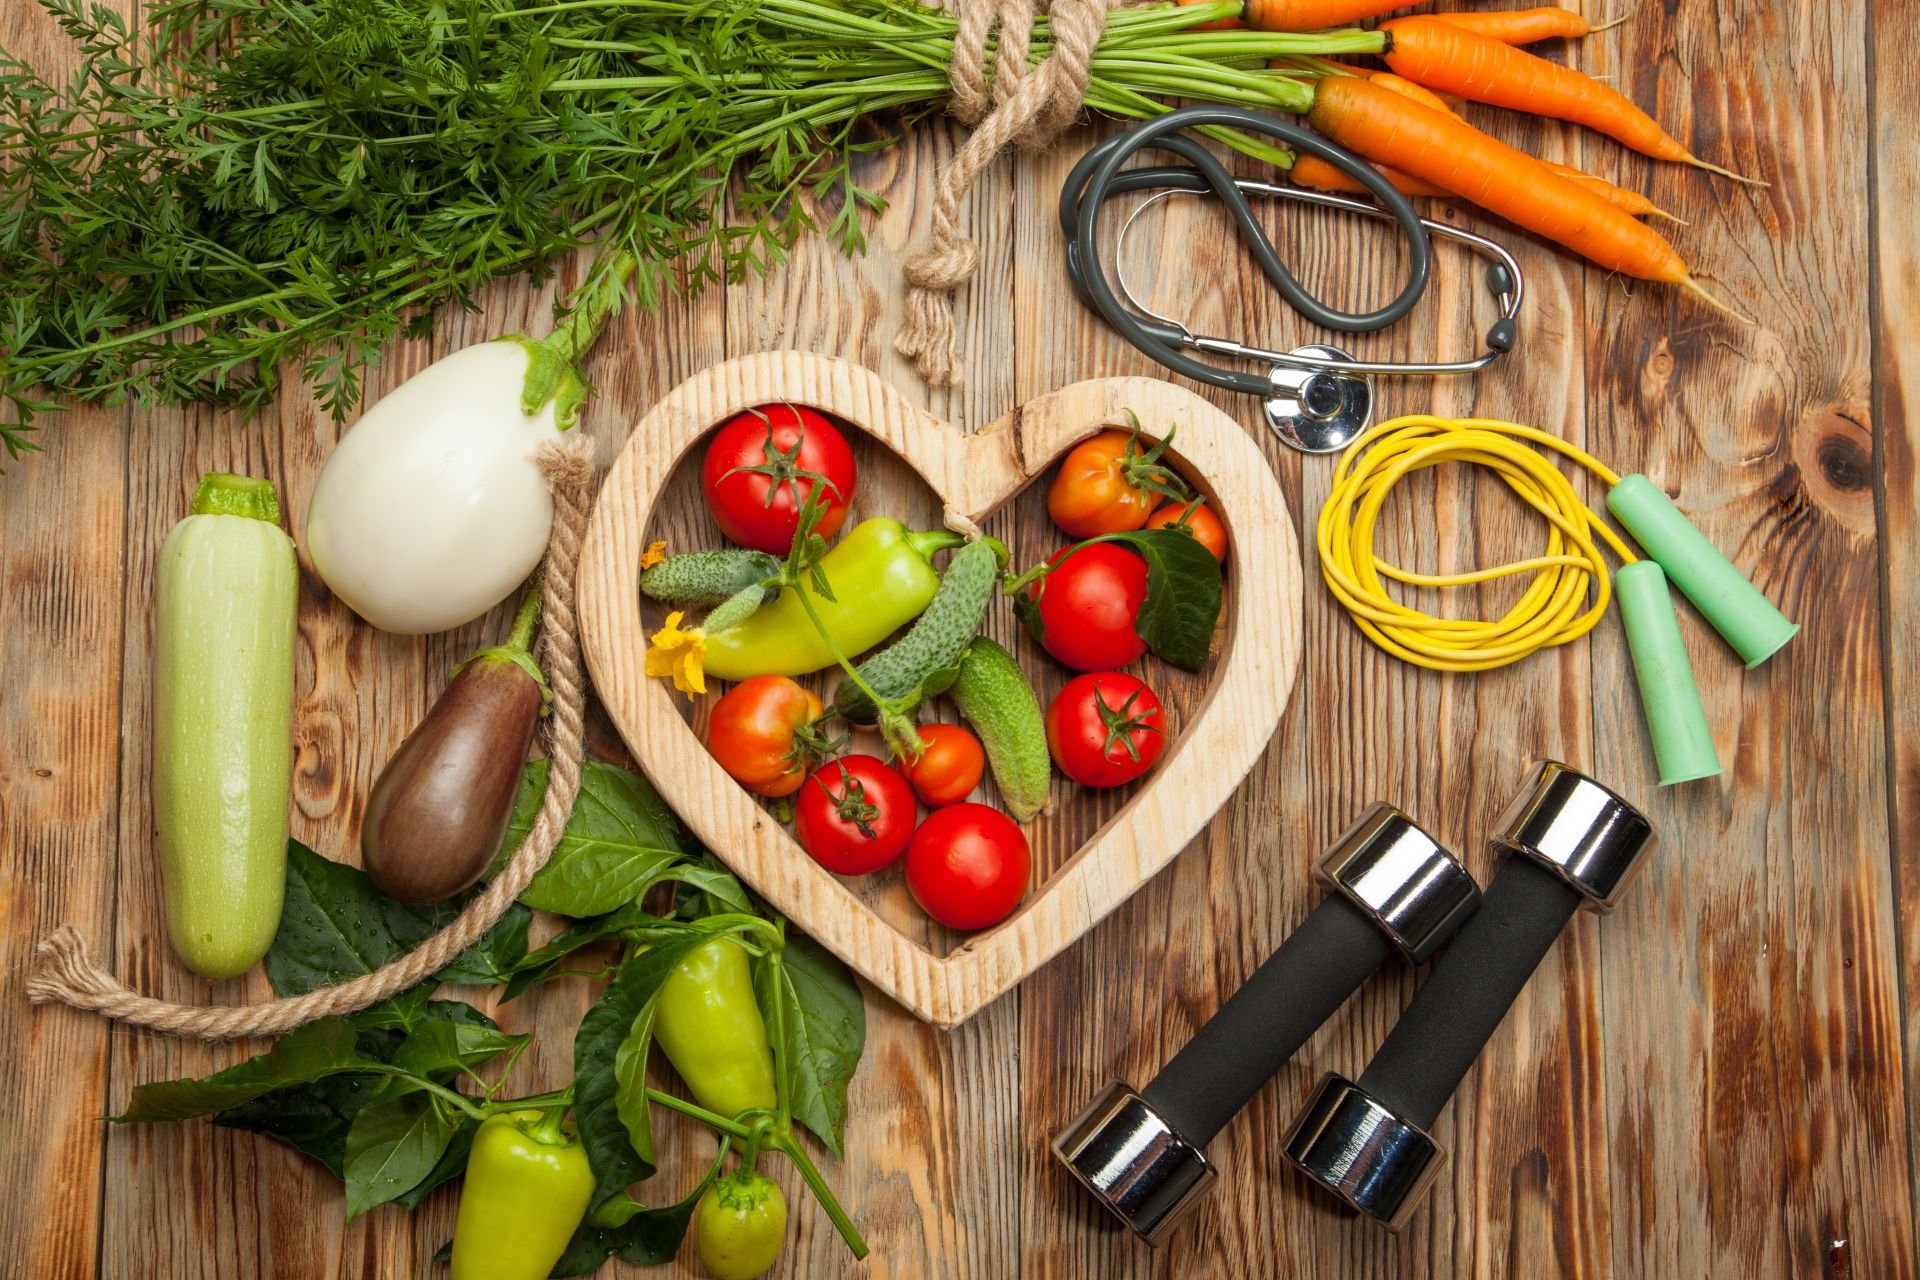 Jakie produkty obniżają cholesterol? Sterole roślinne to skuteczny sposób na obniżanie cholesterolu już o 7-10% w ciągu 3 tygodni. 